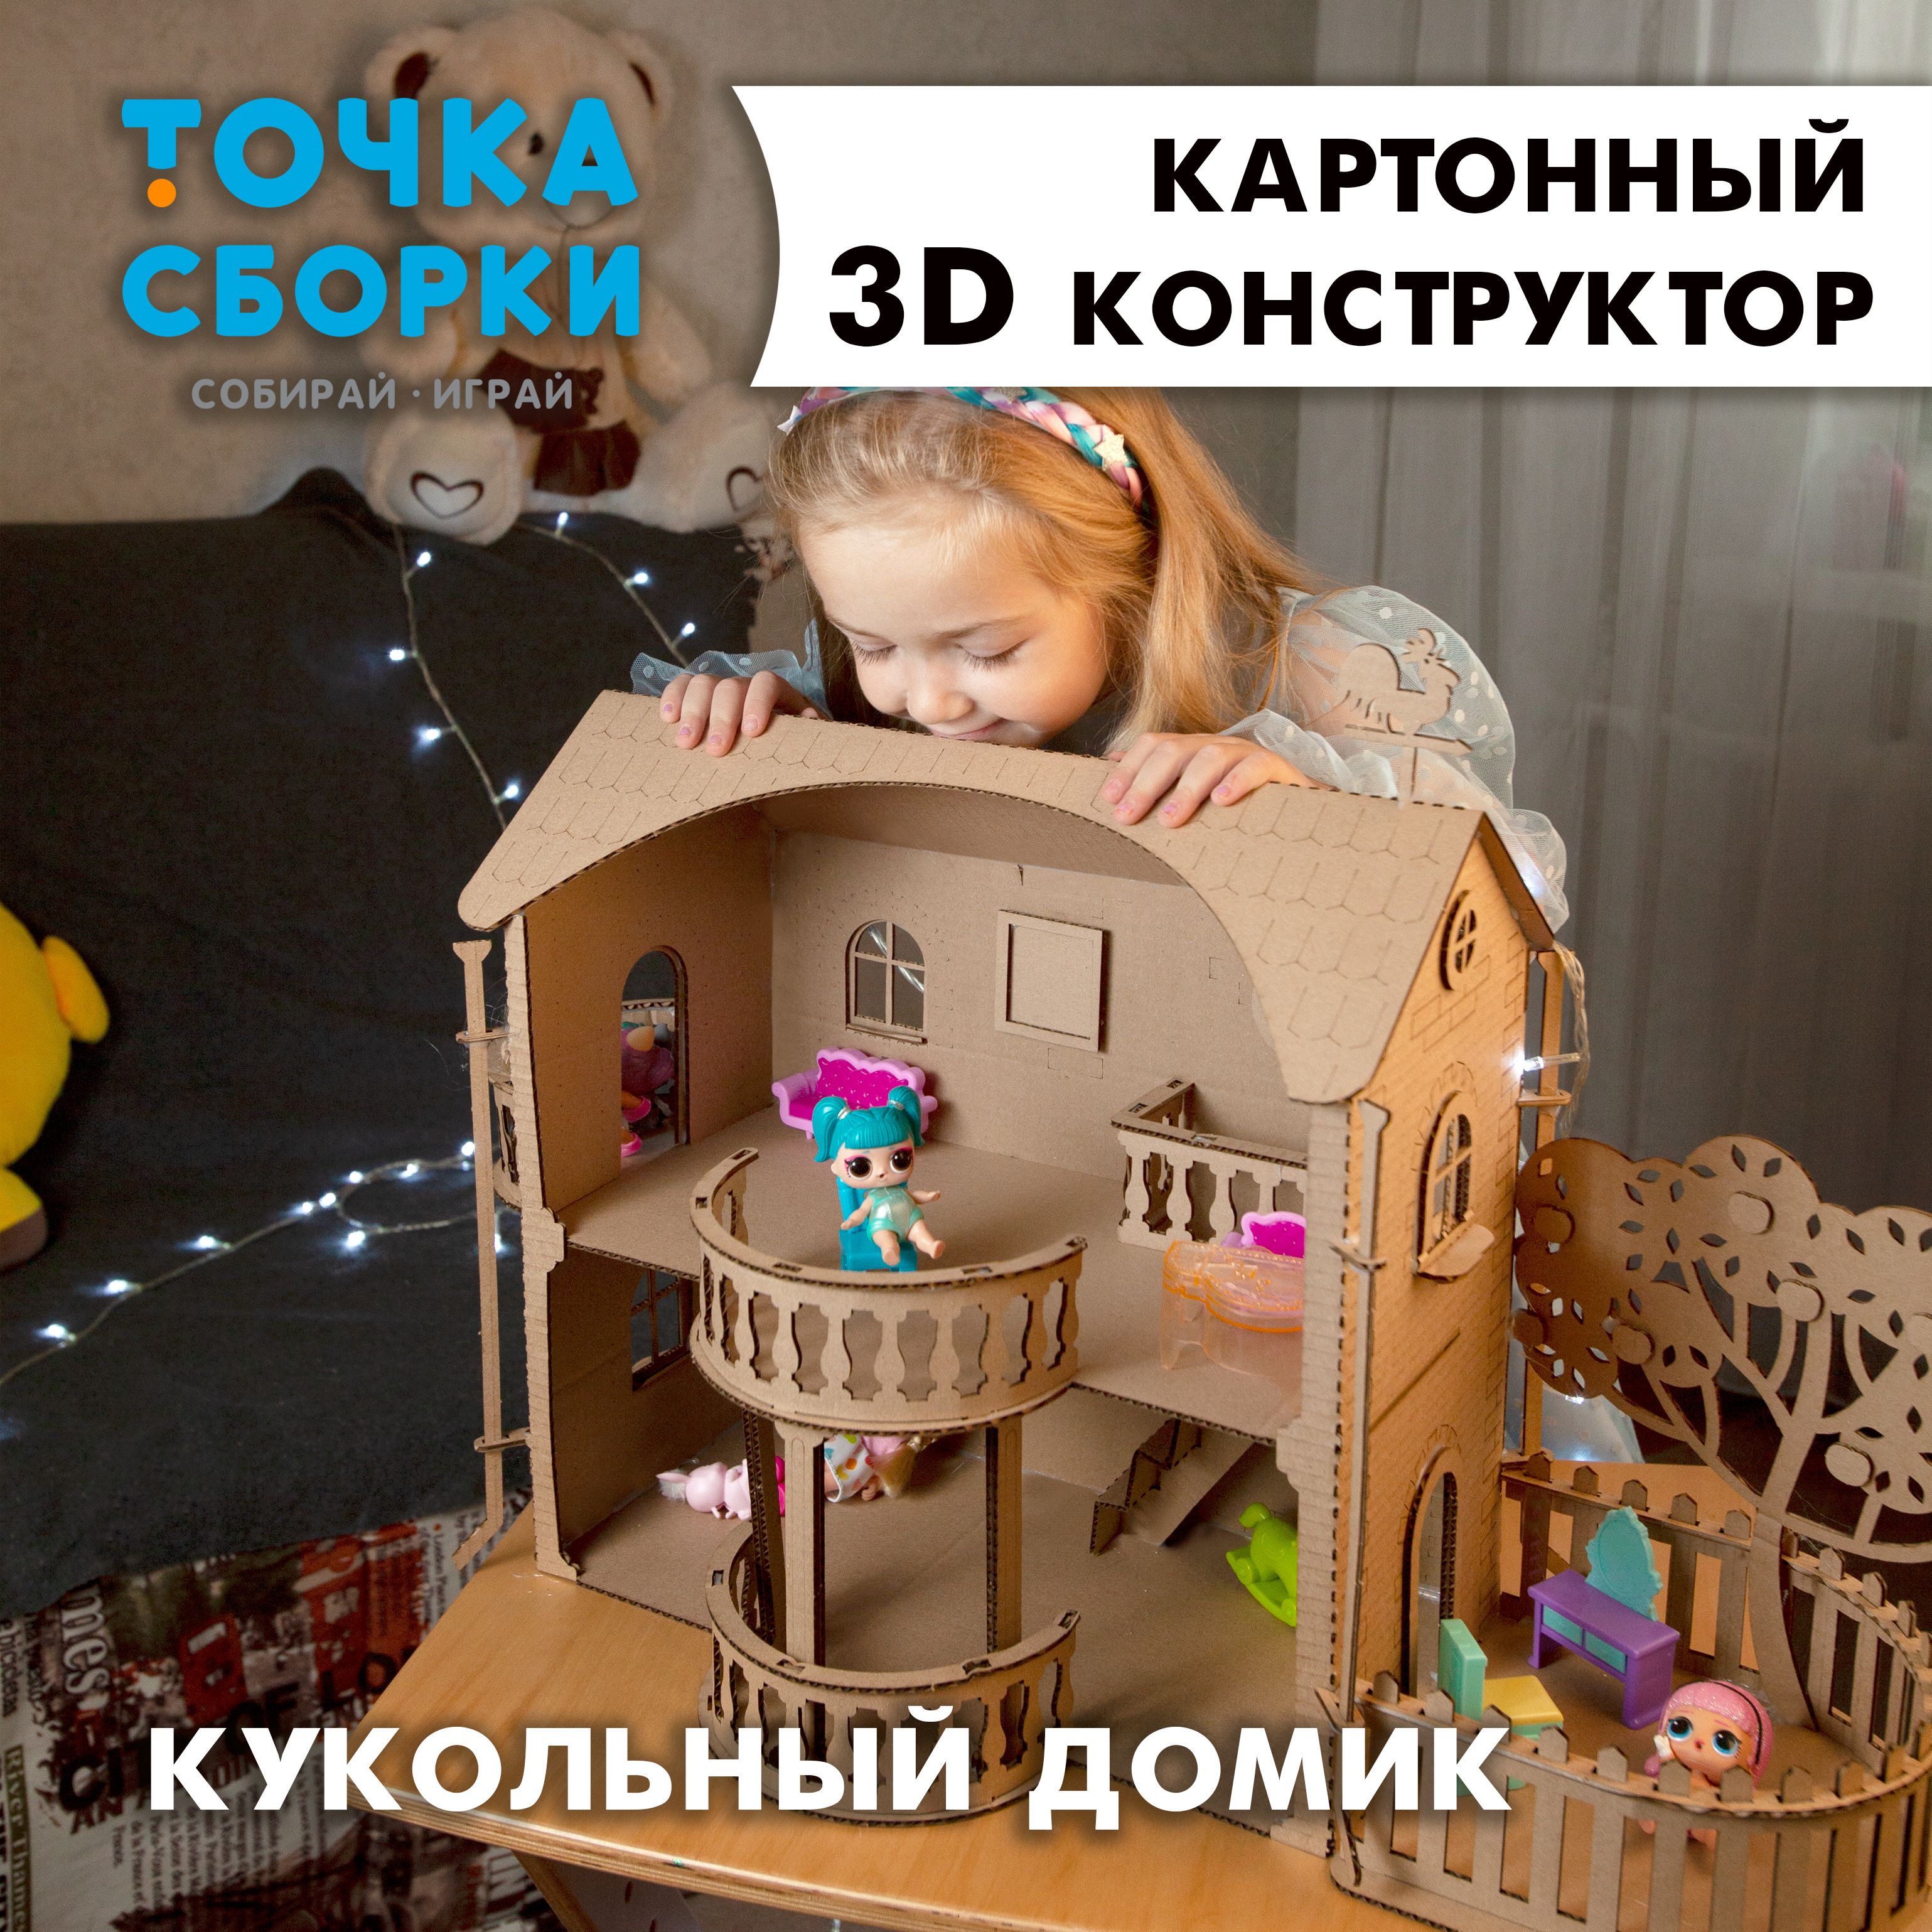 Картонные домики для детей, домики из картона купить в Москве